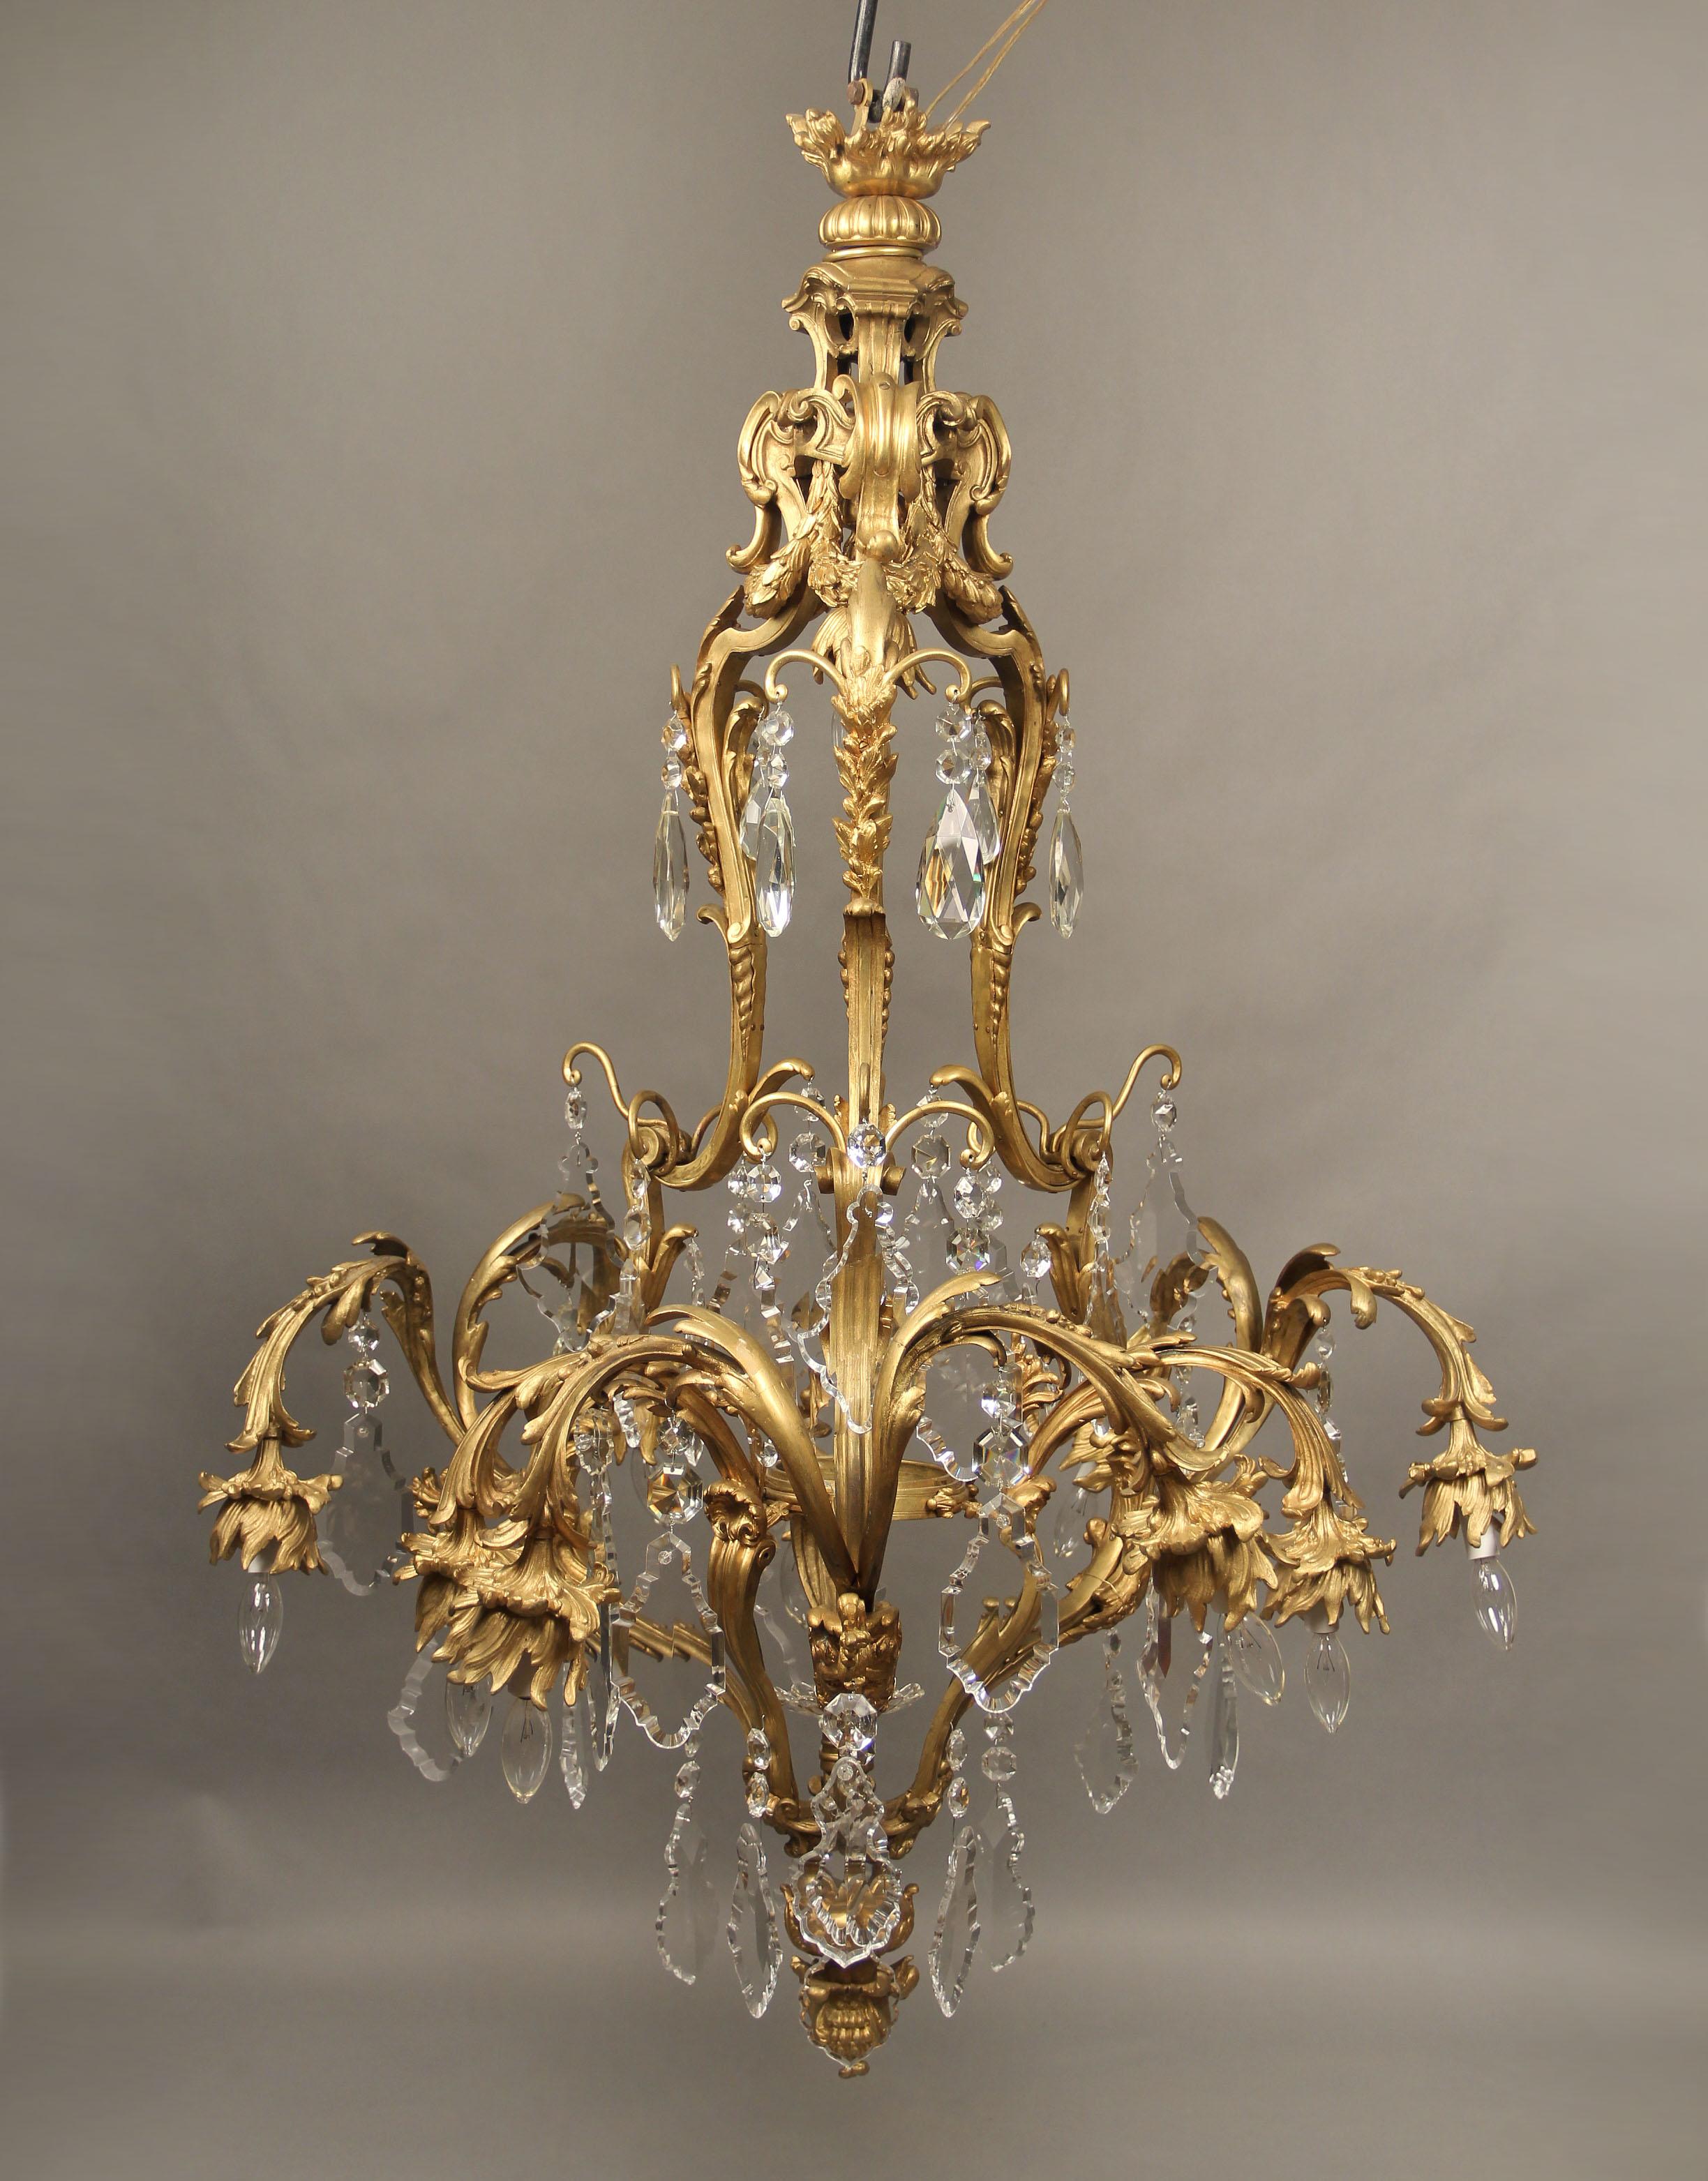 Lustre à onze lumières en bronze doré et cristal du début du XXe siècle

Cage en bronze coulé, conçue avec trois masques masculins, des fleurs, des coquillages et des récifs, avec des cristaux à multiples facettes et formes, neuf lumières